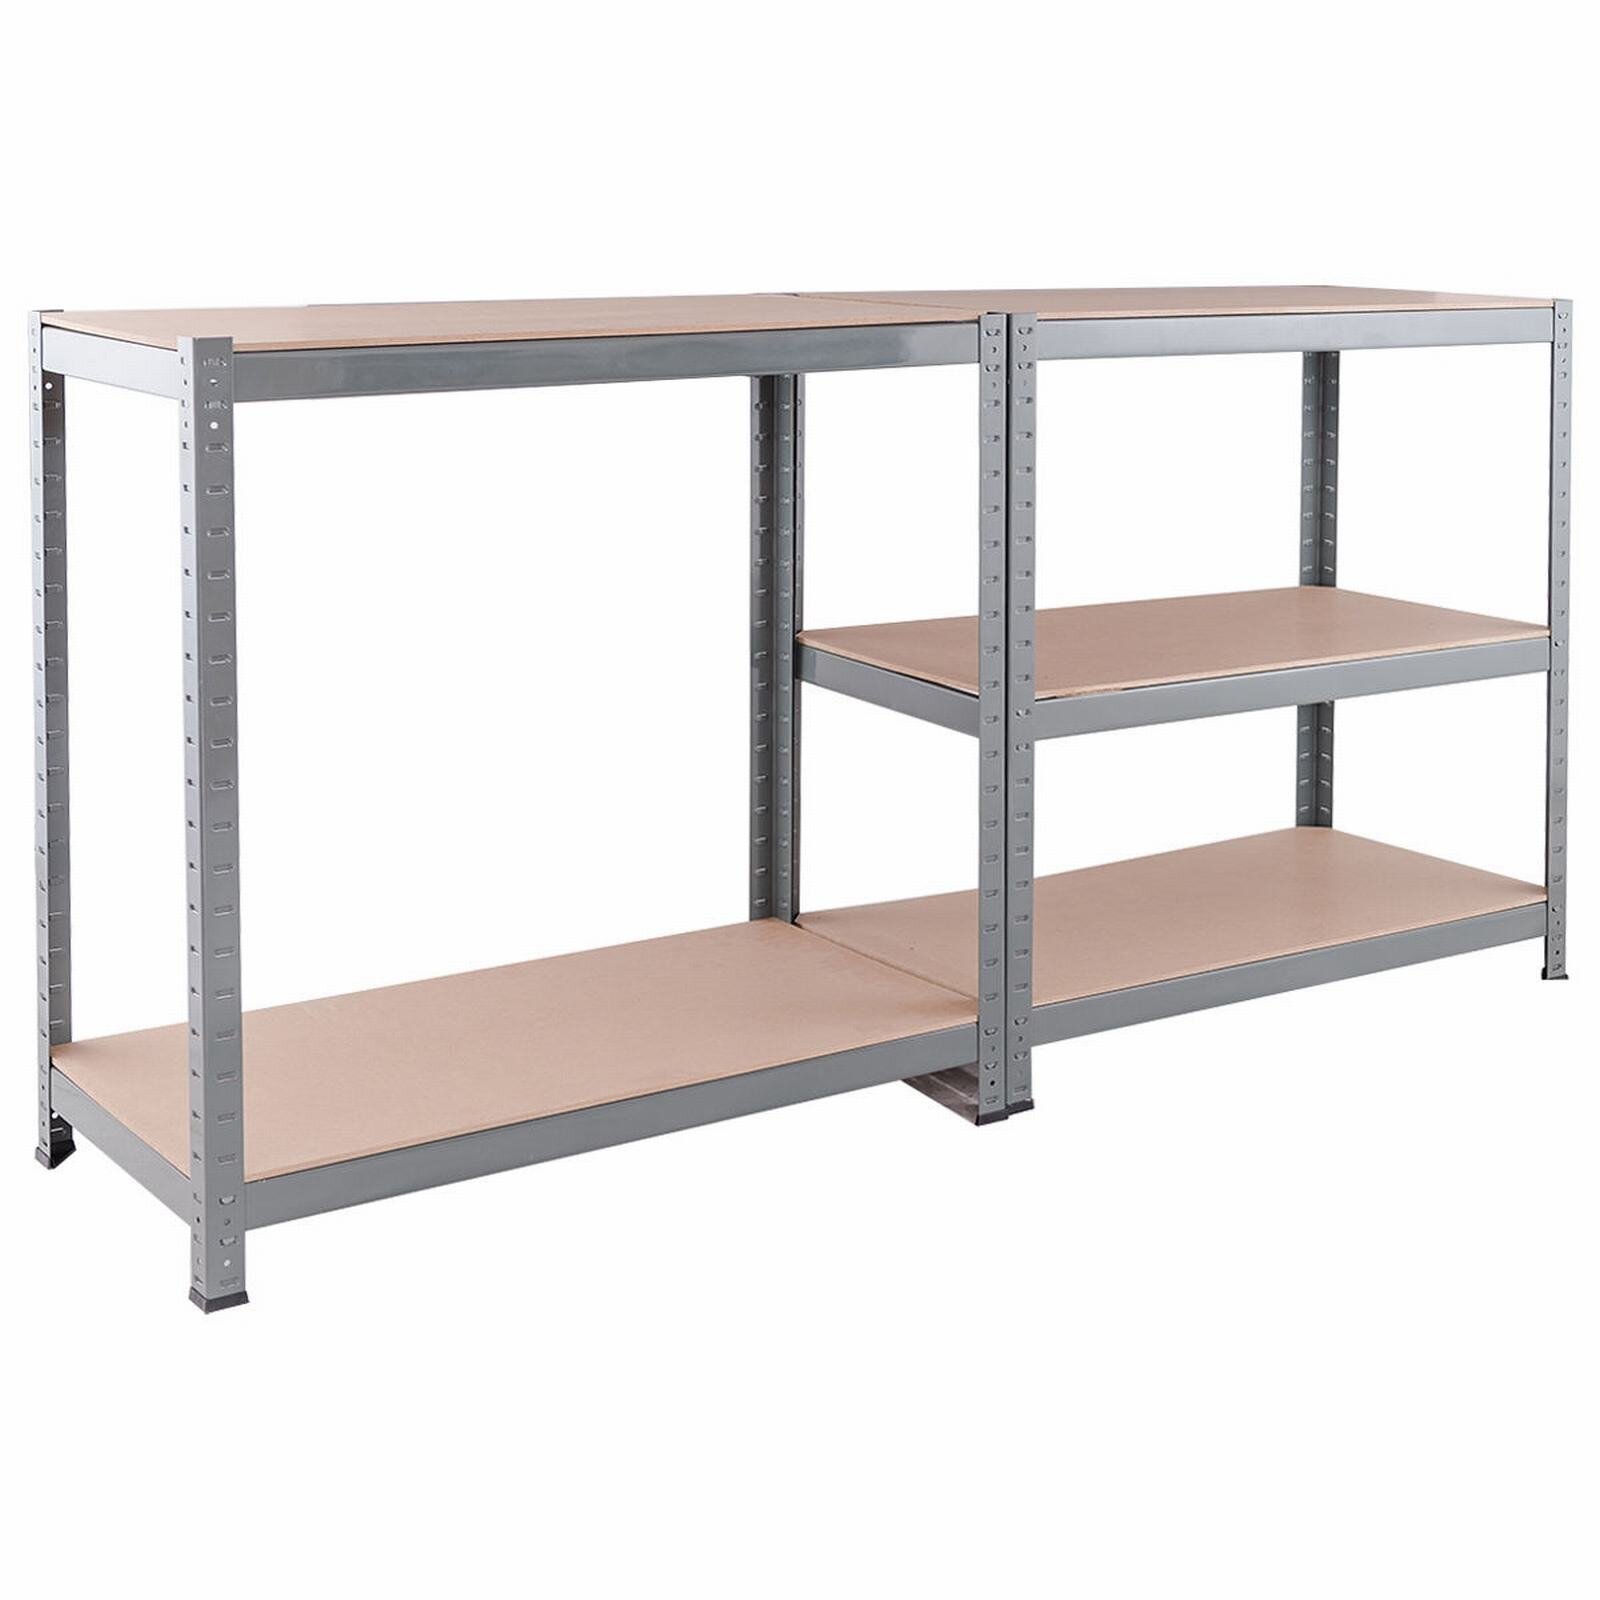 71" 5-Tier Adjustable Storage Rack for Garage Shelving or Home Kitchen Office 